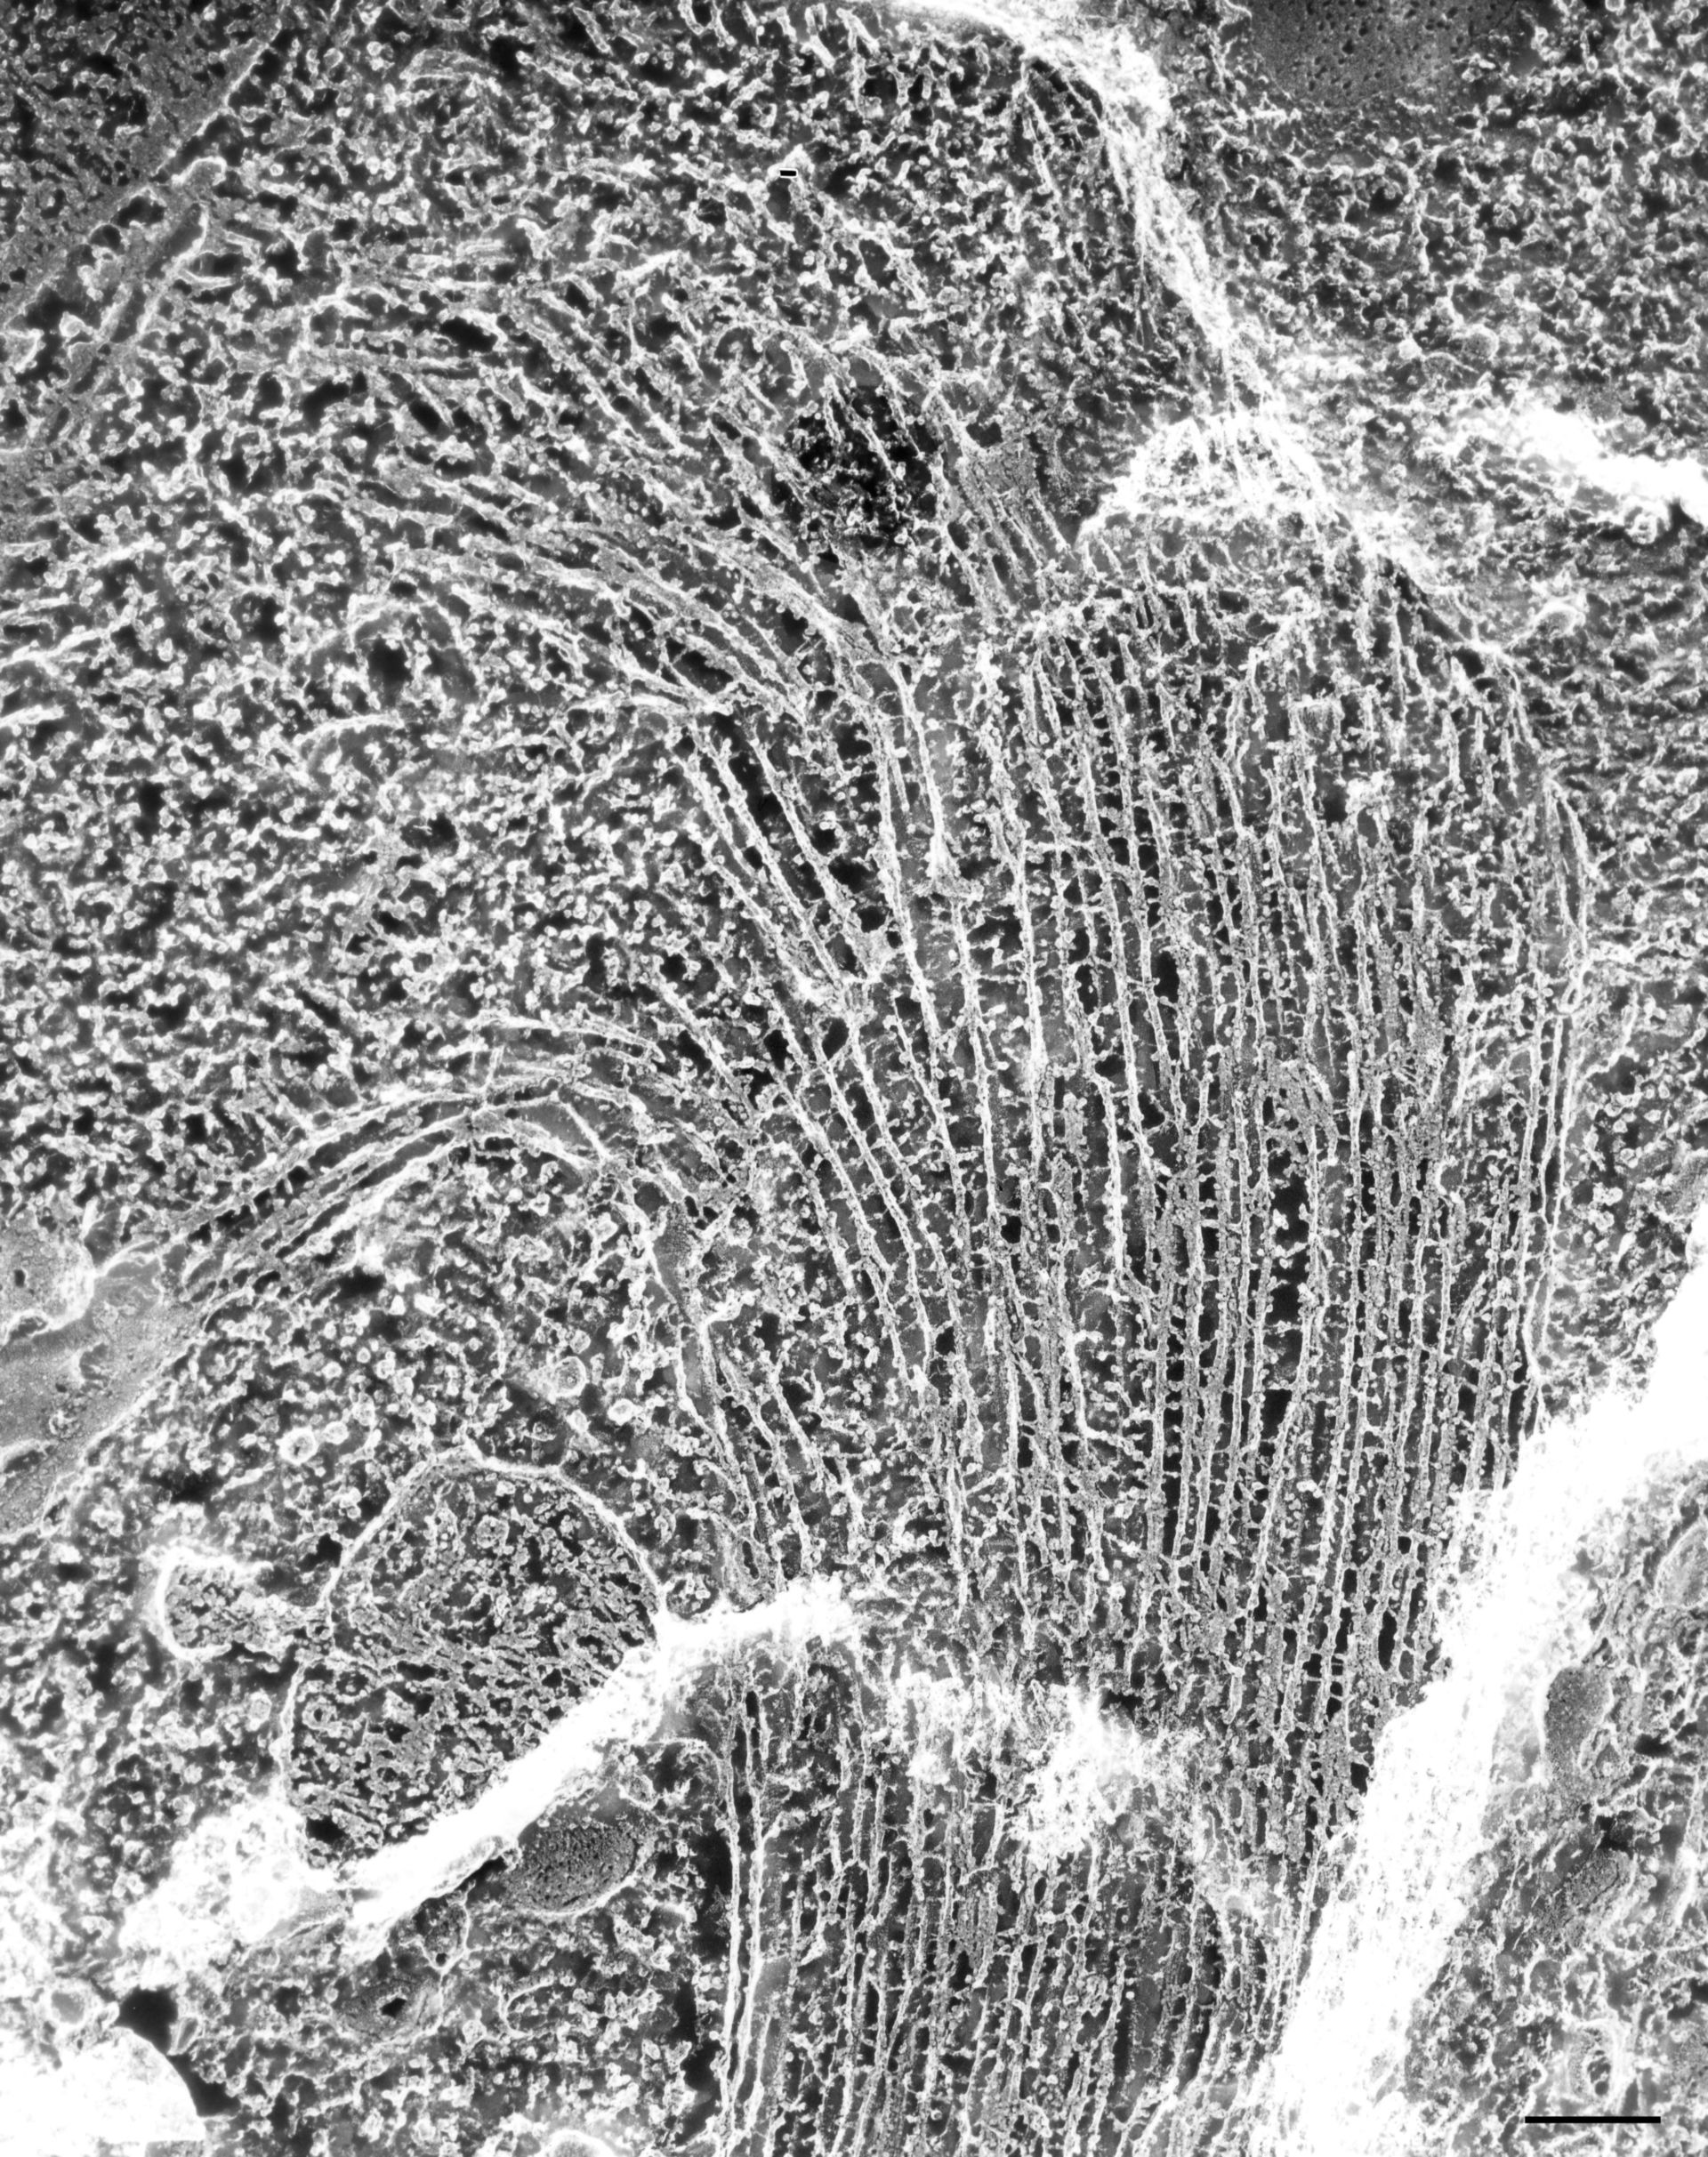 Paramecium multimicronucleatum (Microtubule) - CIL:36652